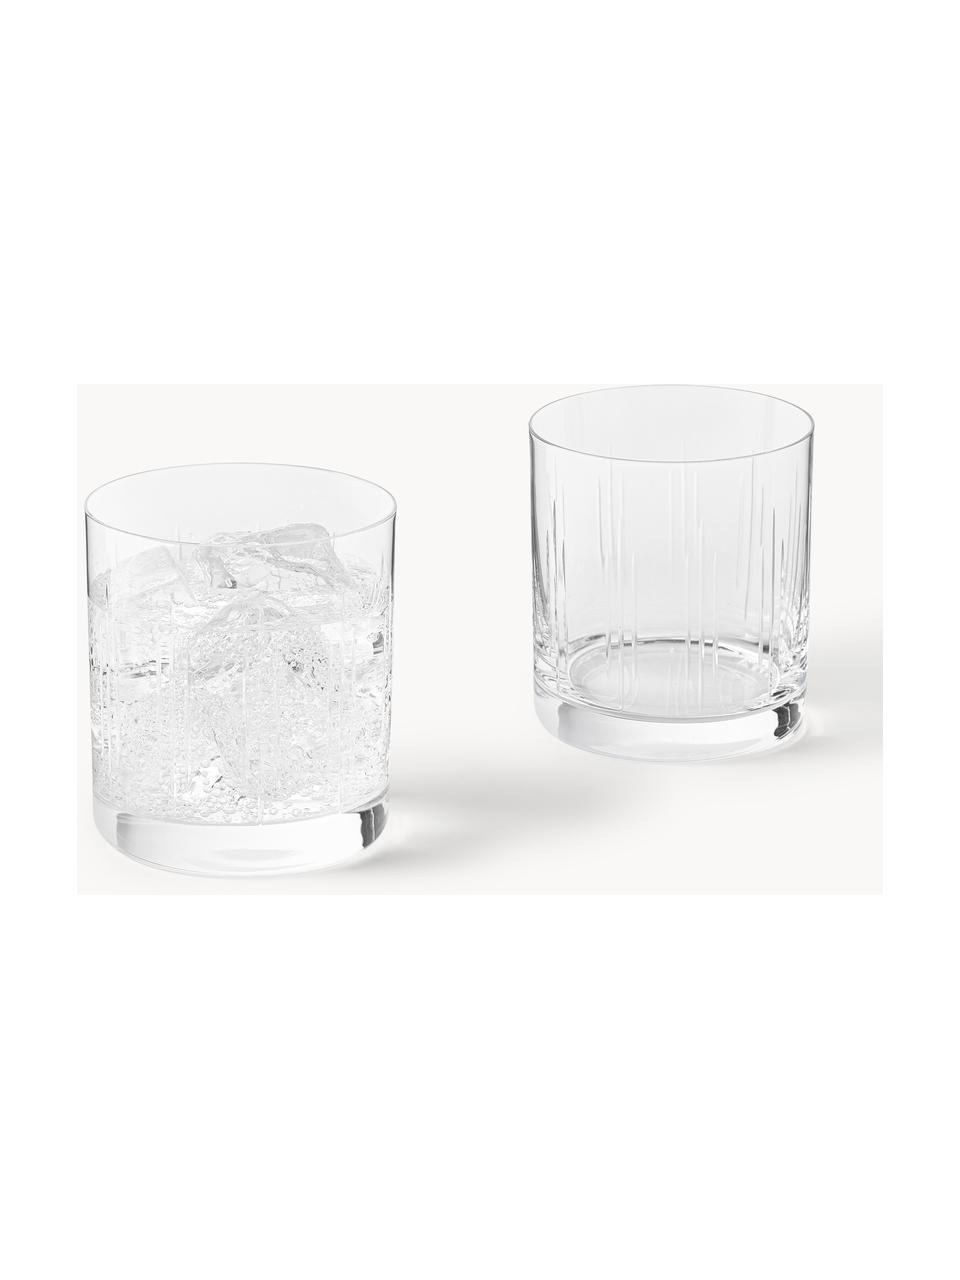 Waterglazen Felipe van kristalglas, 4 stuks, Crystal glas/kristalglas, Transparant, Ø 8 x H 9 cm, 280 ml